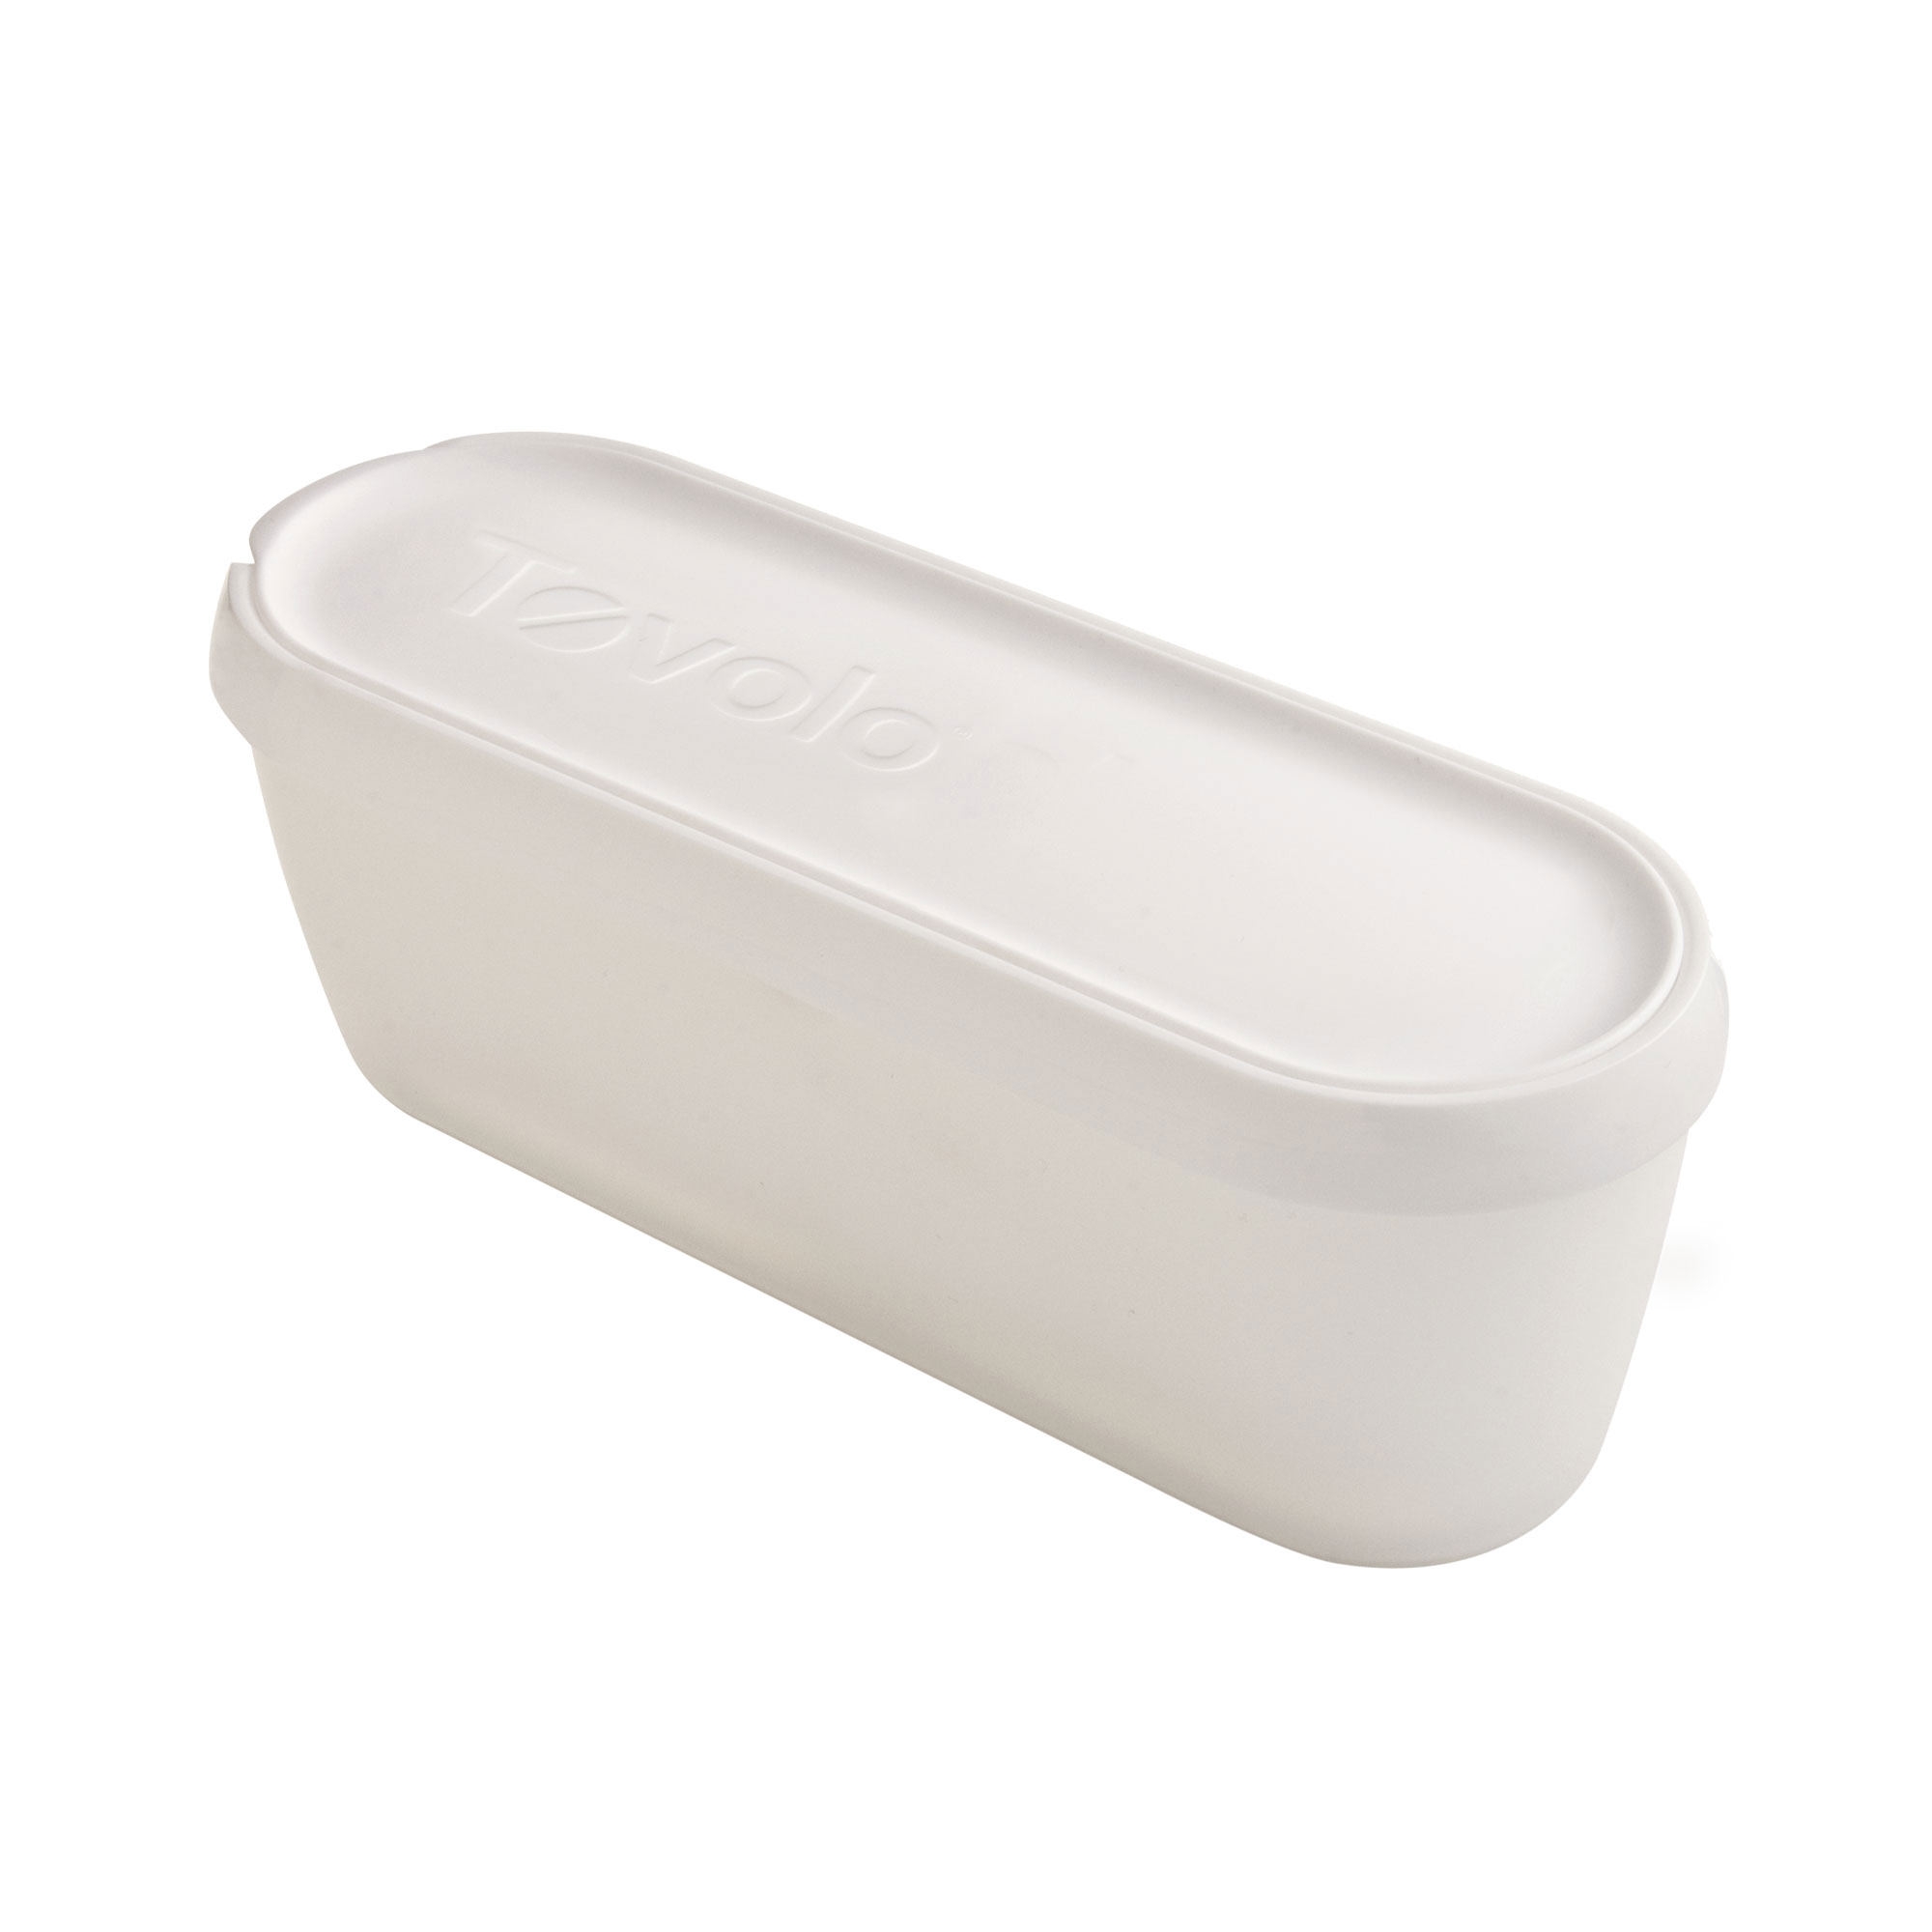 Tovolo Glide-A-Scoop Ice Cream Tub 1.5L White Image 1